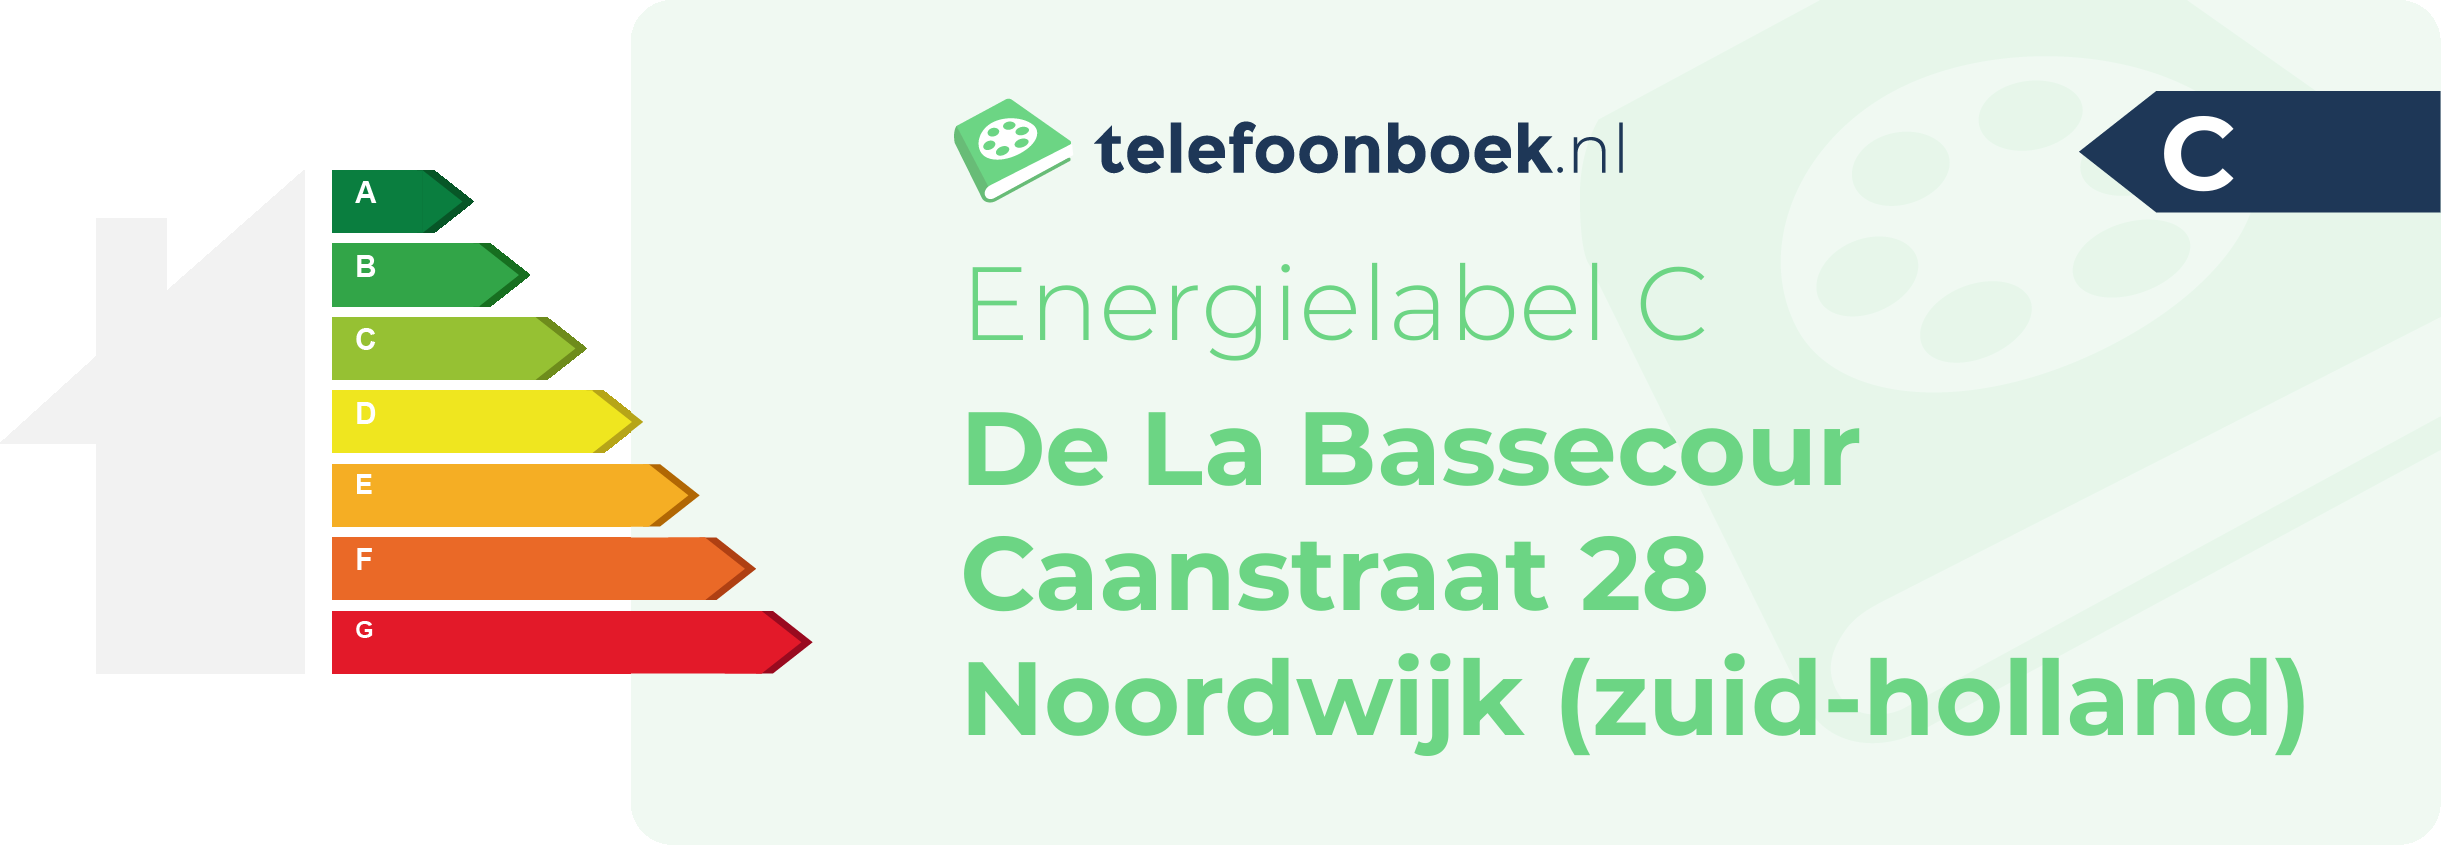 Energielabel De La Bassecour Caanstraat 28 Noordwijk (Zuid-Holland)